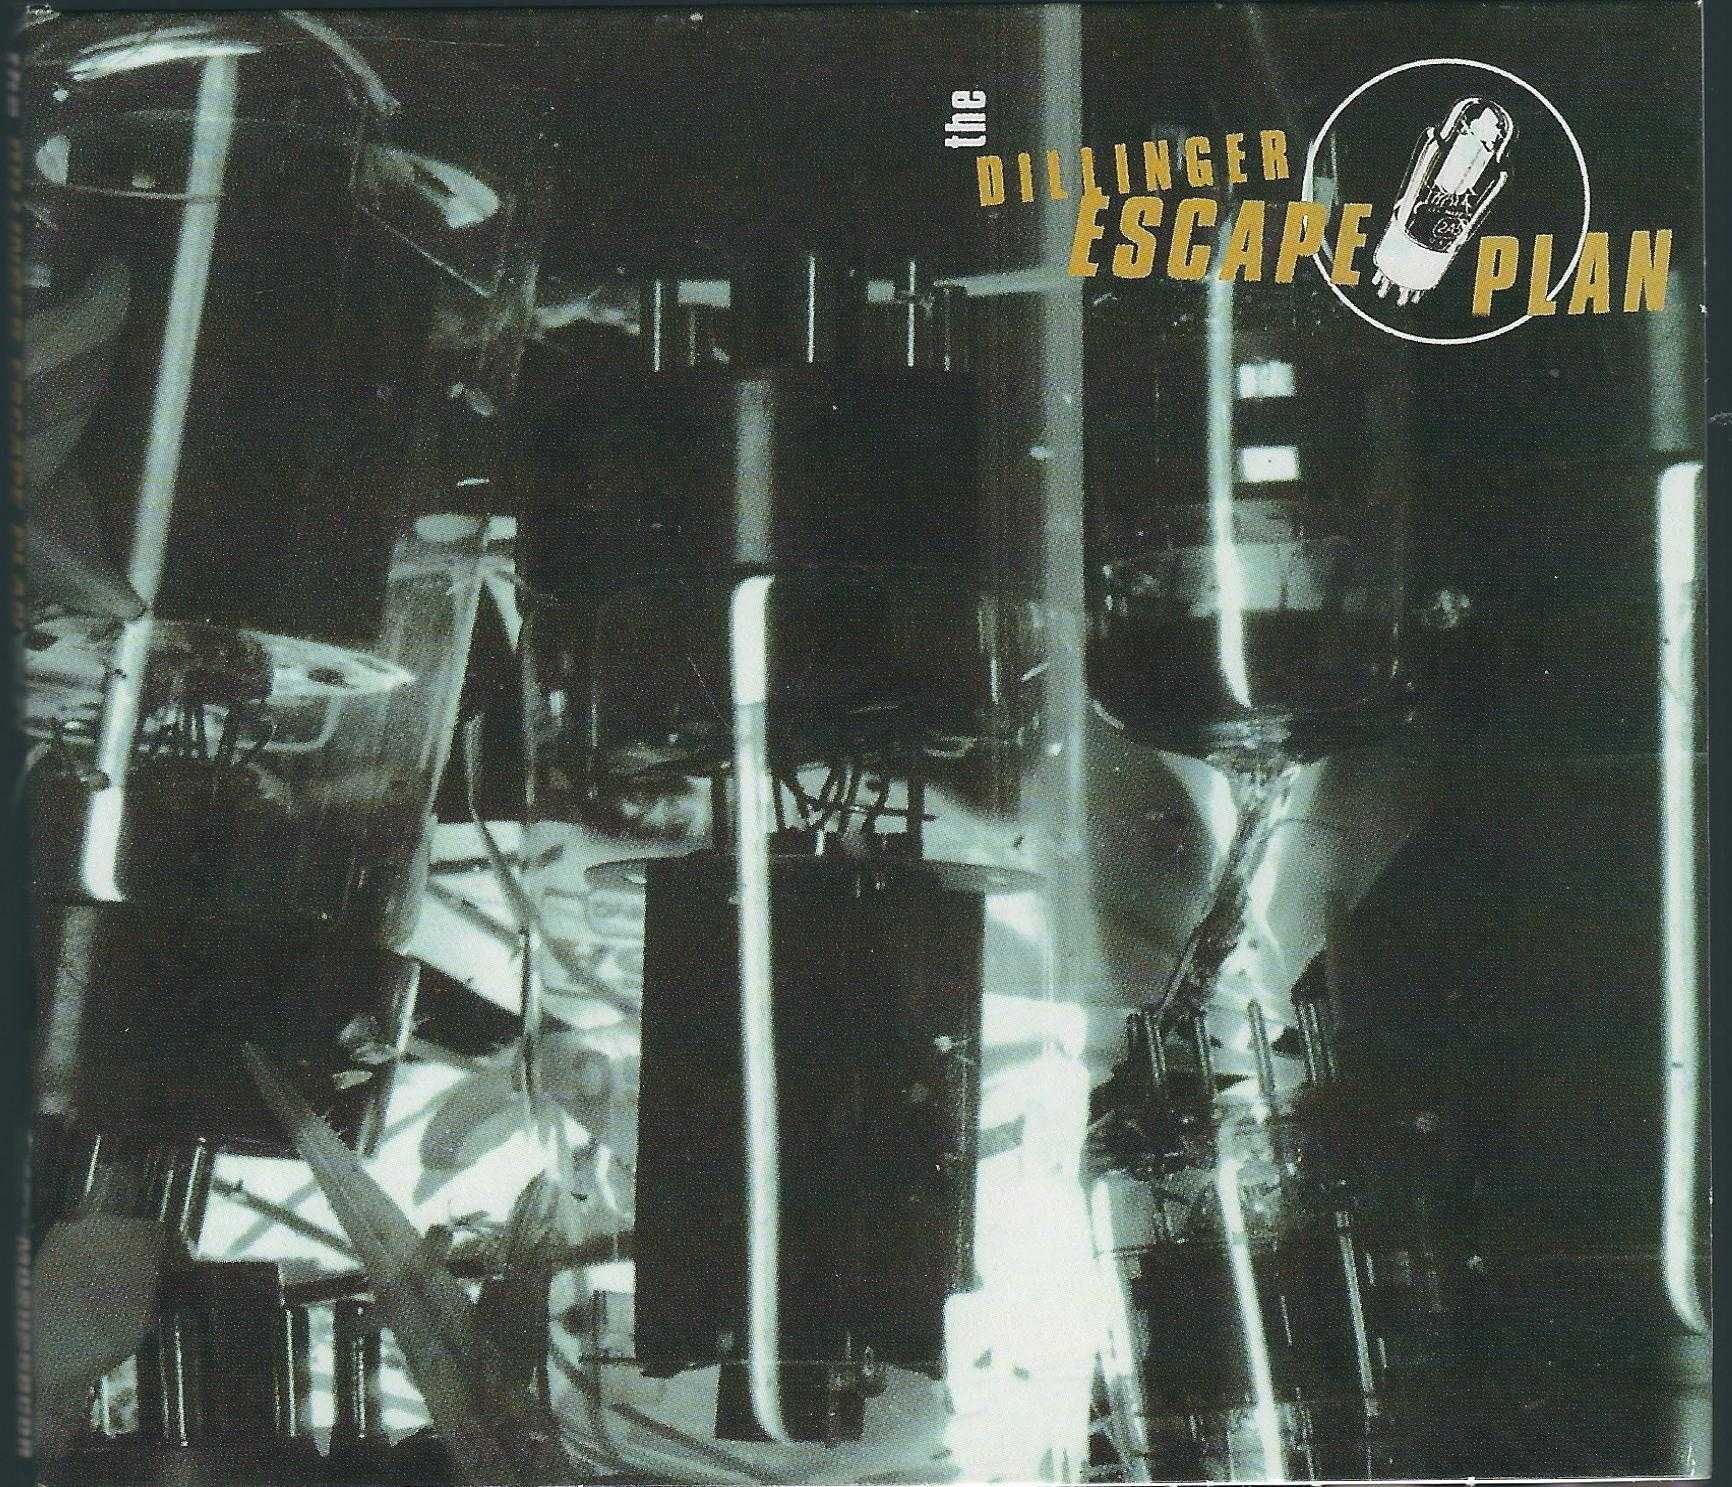 CD EP The Dillinger Escape Plan - The Dillinger Escape Plan (2012) Dig